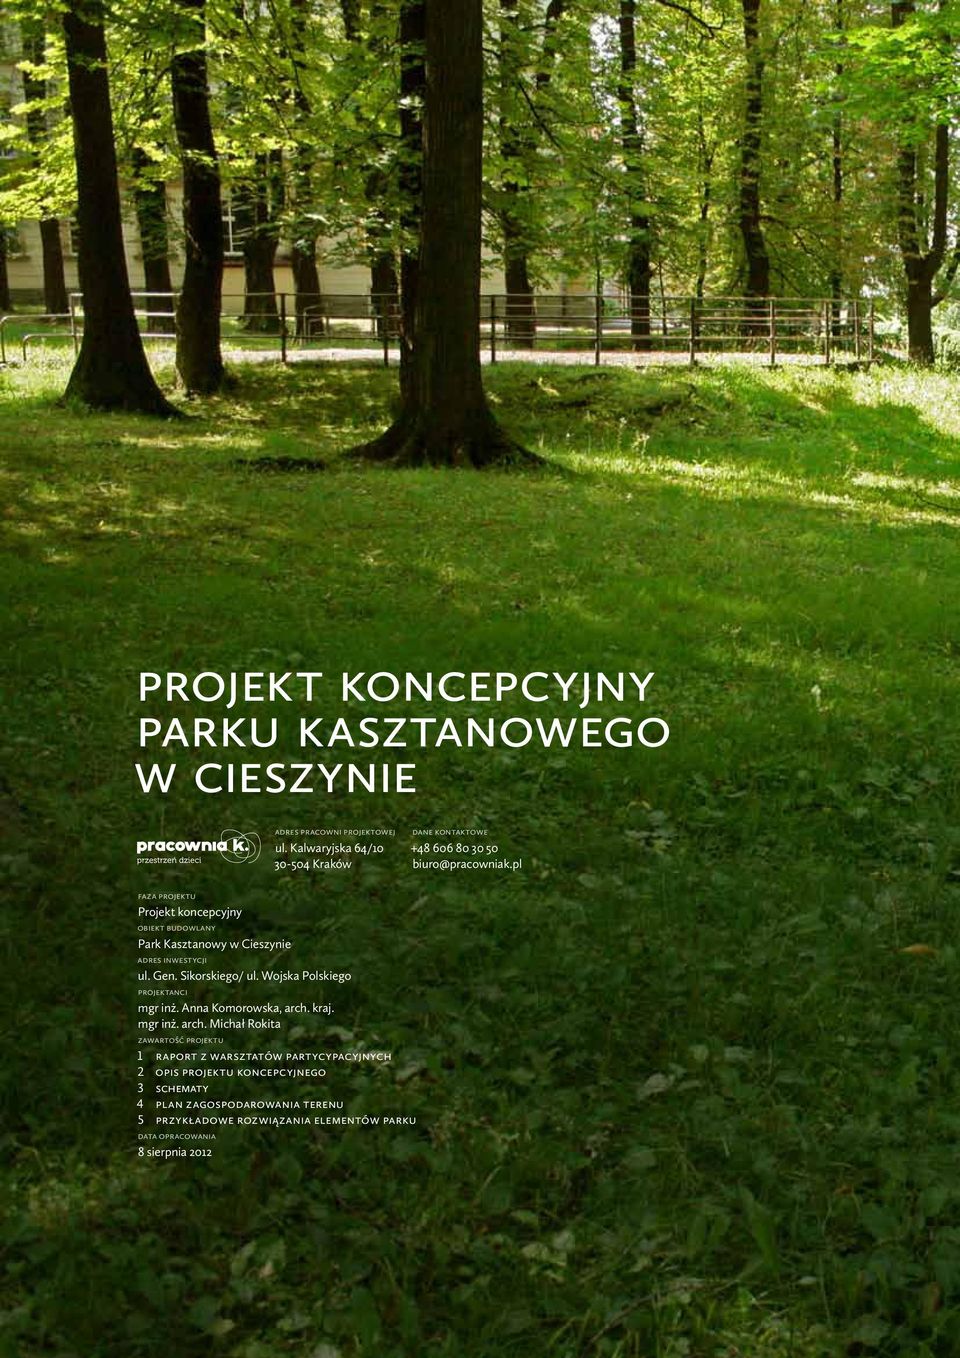 pl faza projektu Projekt koncepcyjny obiekt budowlany Park Kasztanowy w Cieszynie adres inwestycji ul. Gen. Sikorskiego/ ul.